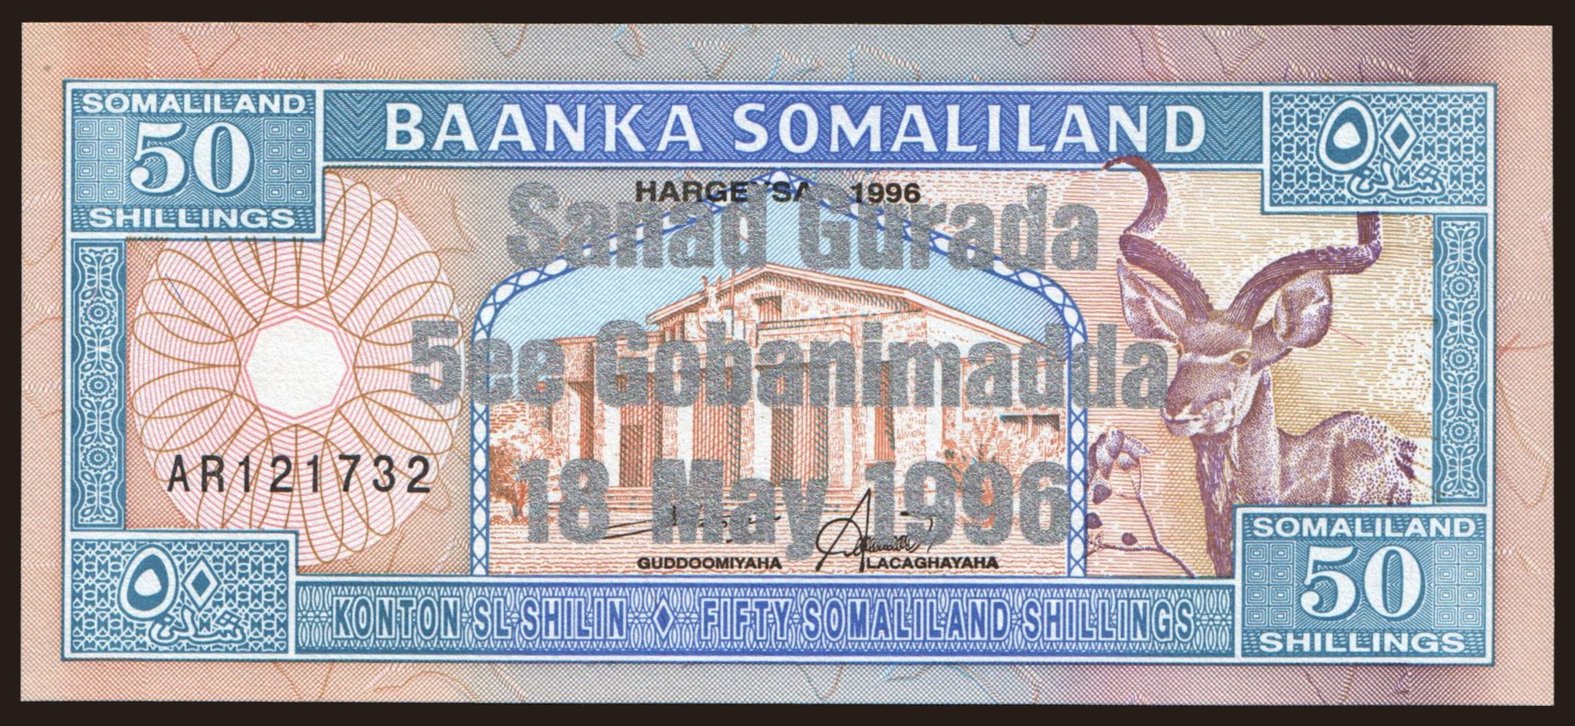 50 shillings, 1996